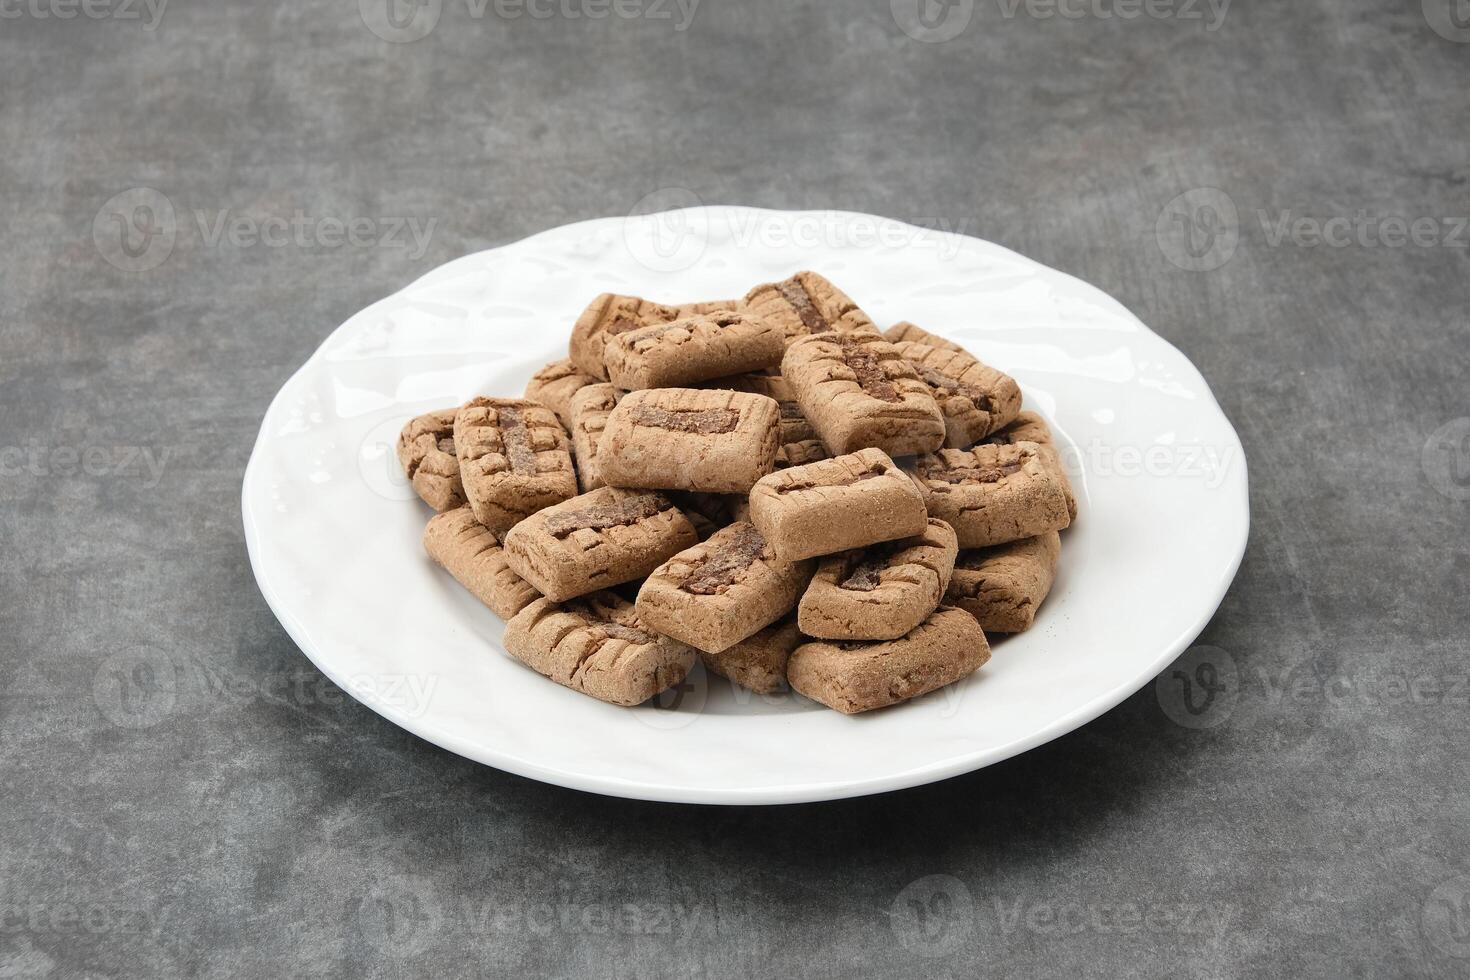 kue sagu ou sagu mordidas, saudável biscoitos fez a partir de sagu farinha, tapioca farinha, baixo gordo manteiga, e chocolate foto